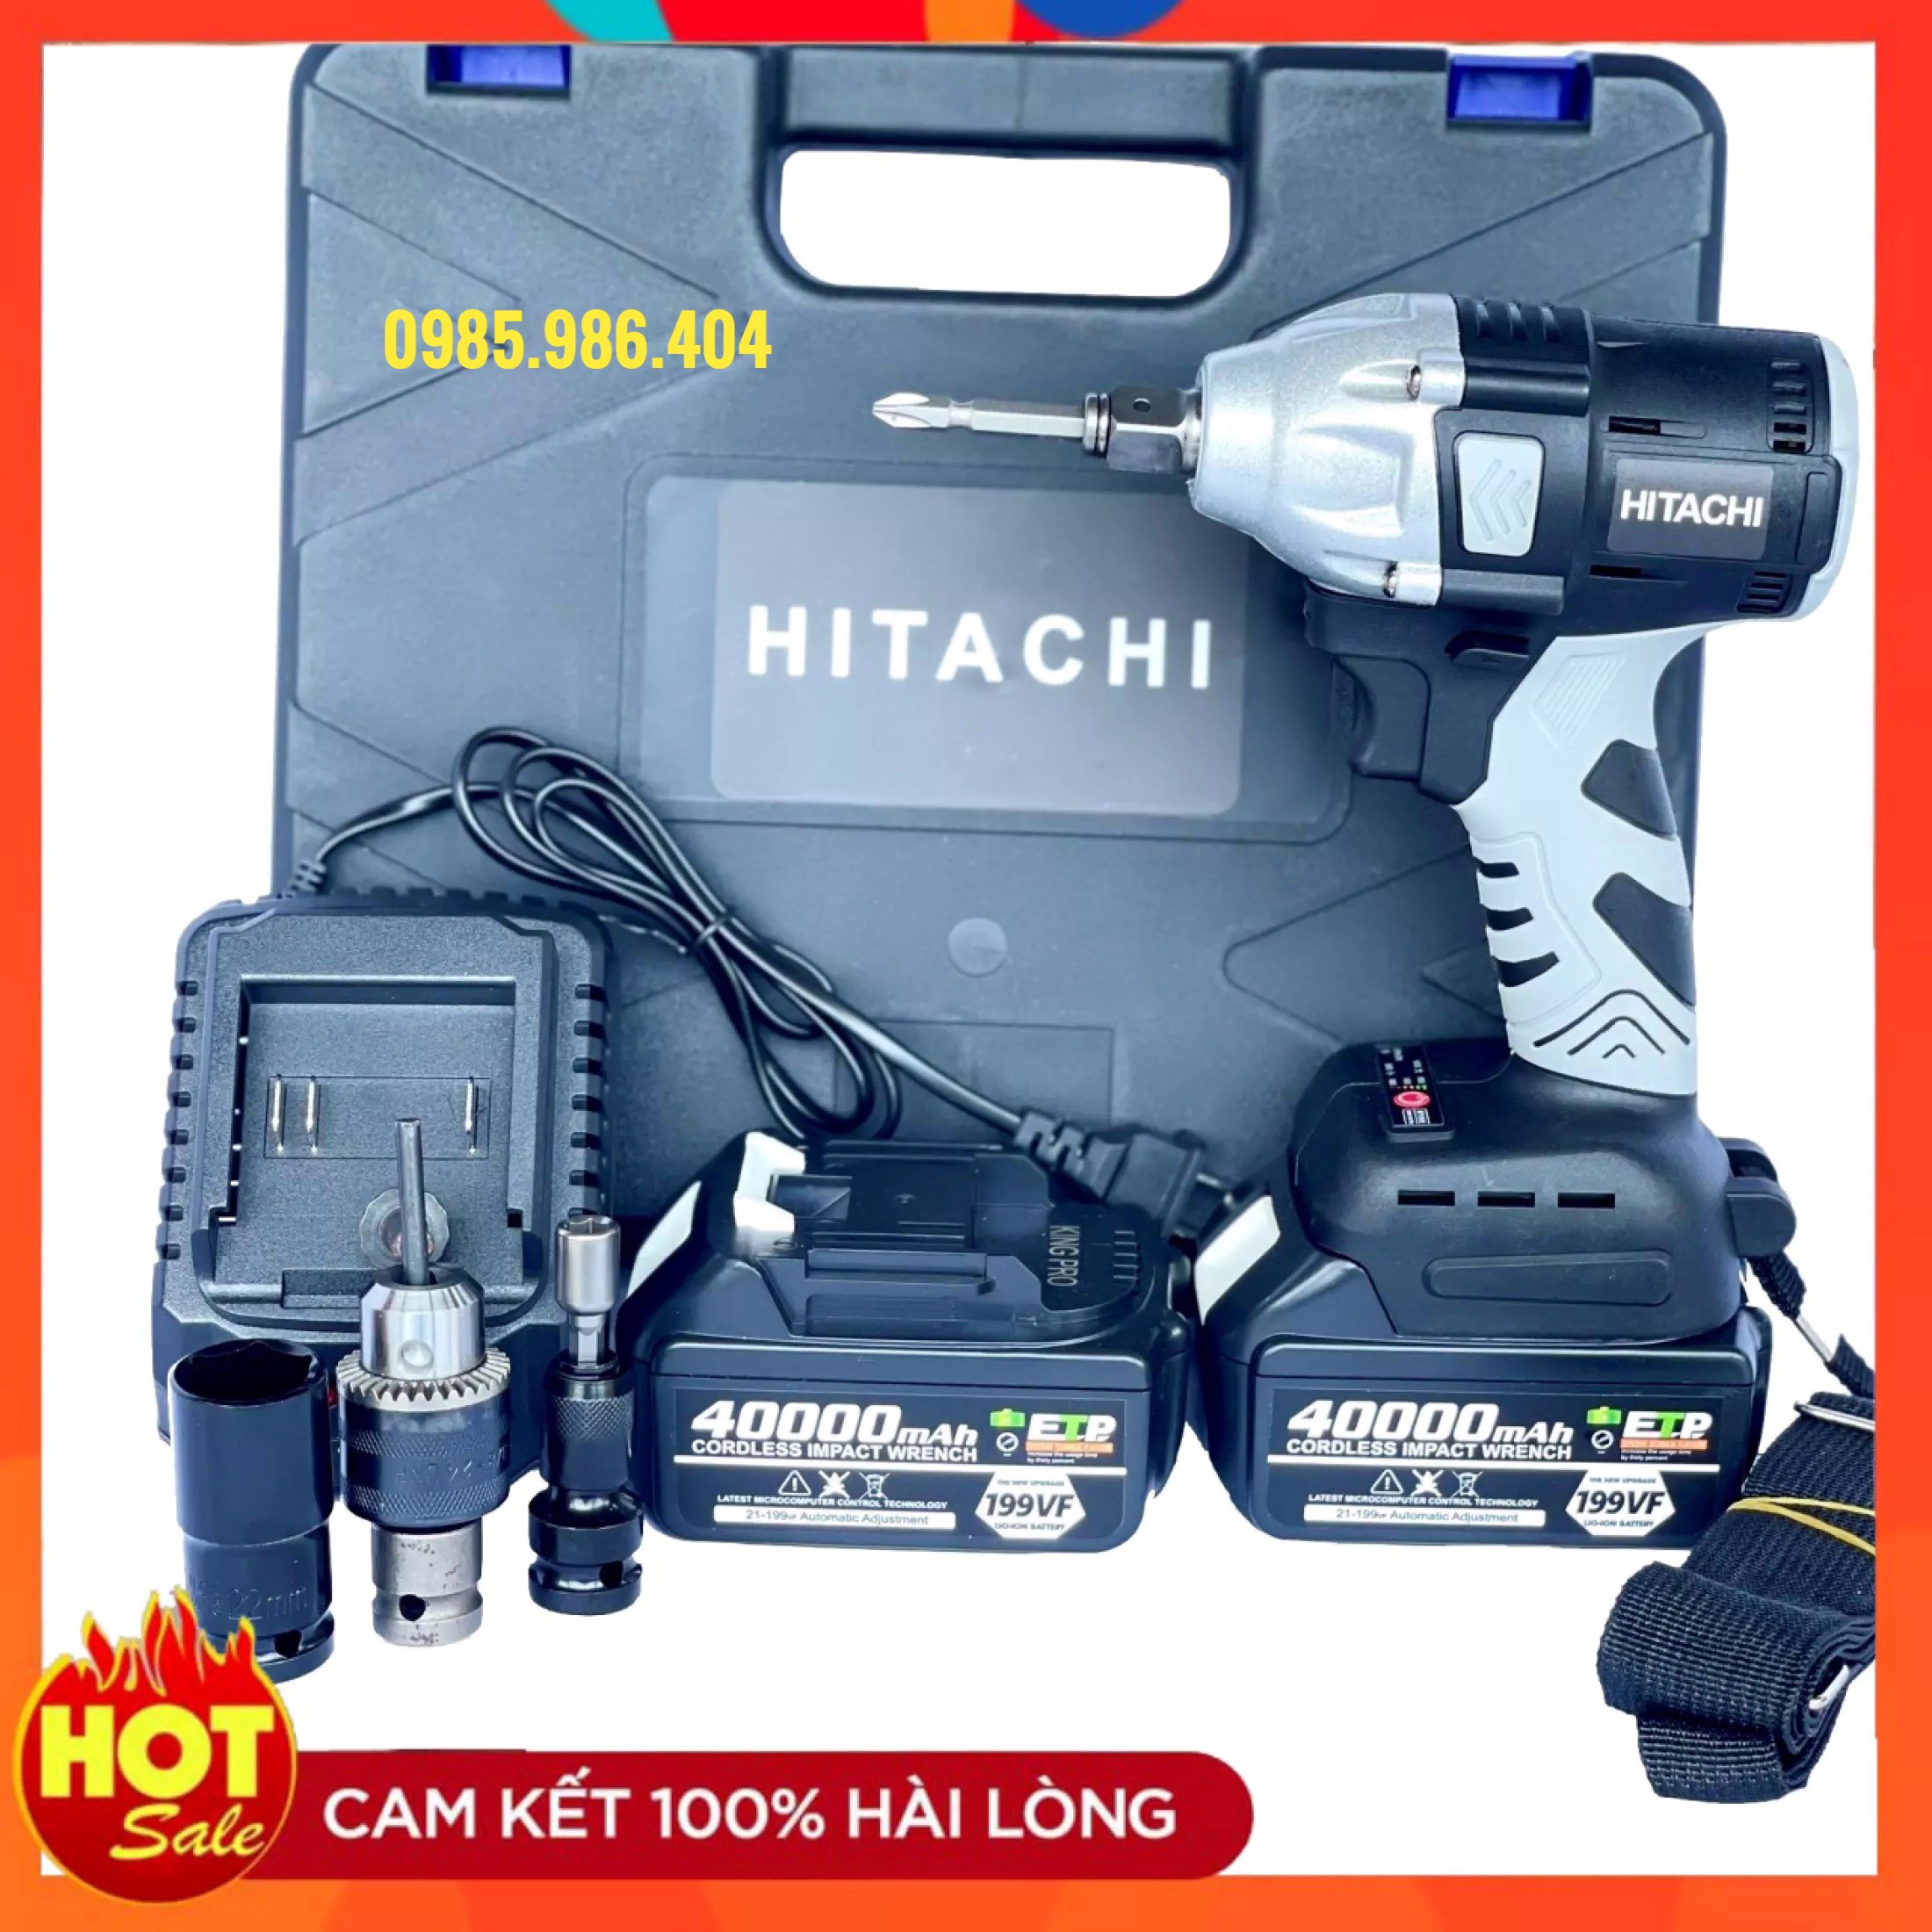 Máy siết bulong Hitachi 199V động cơ không chổi than 3 chức năng khoan,bắn vít,siết ốc + Tặng kèm đầu chuyển vít, chuyển khoan, bắn tôn